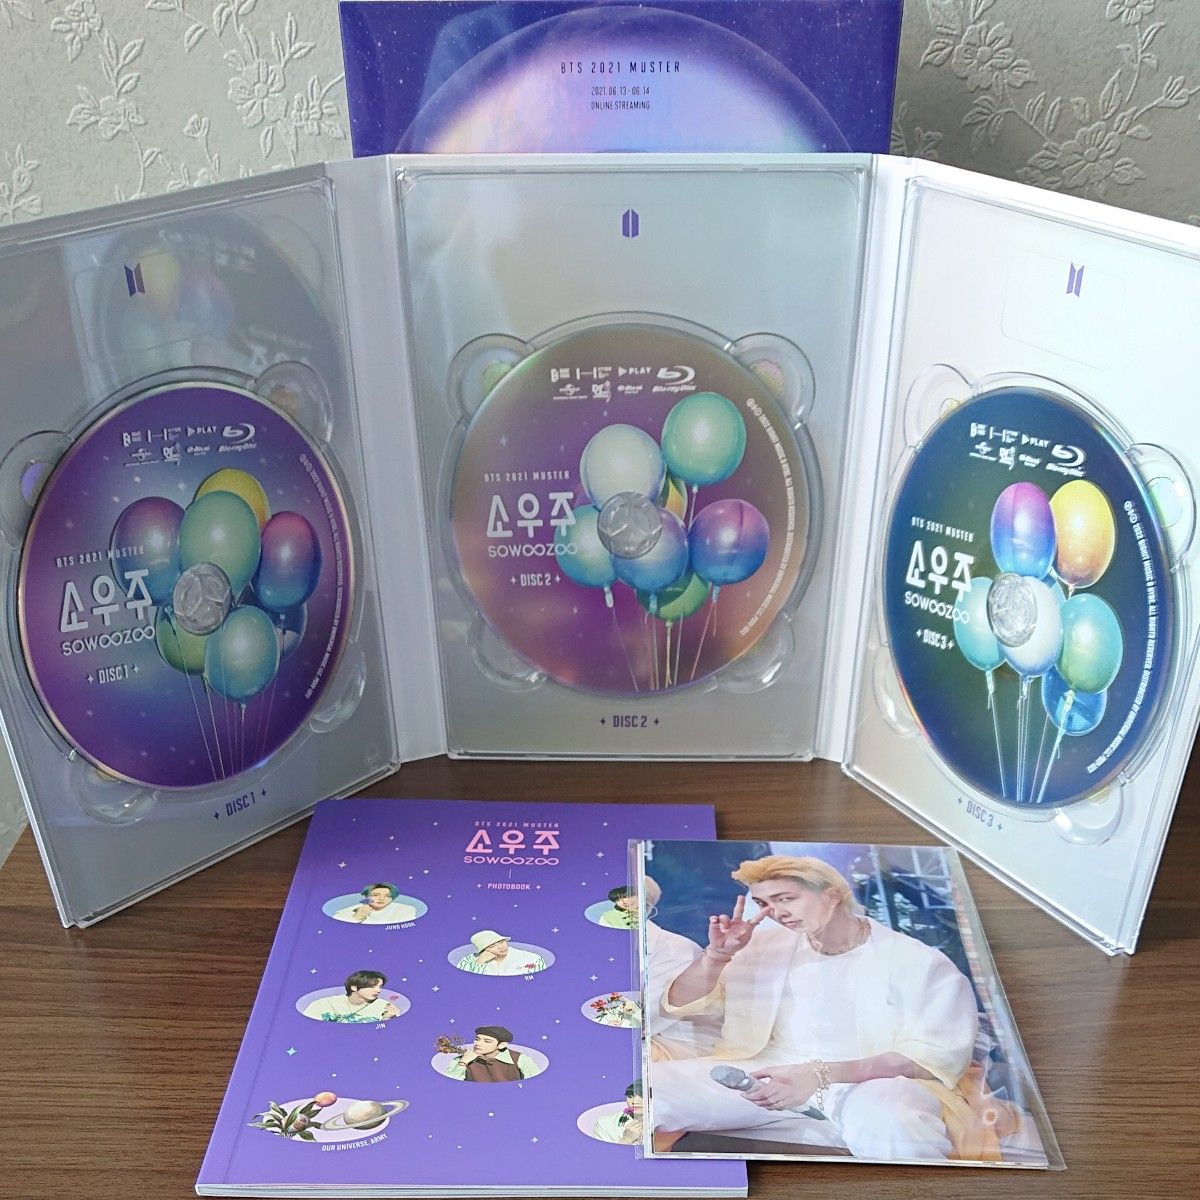 専用》BTS DVD Blu-ray 君に届く ハピエバ マジショ ソウジュ｜PayPay